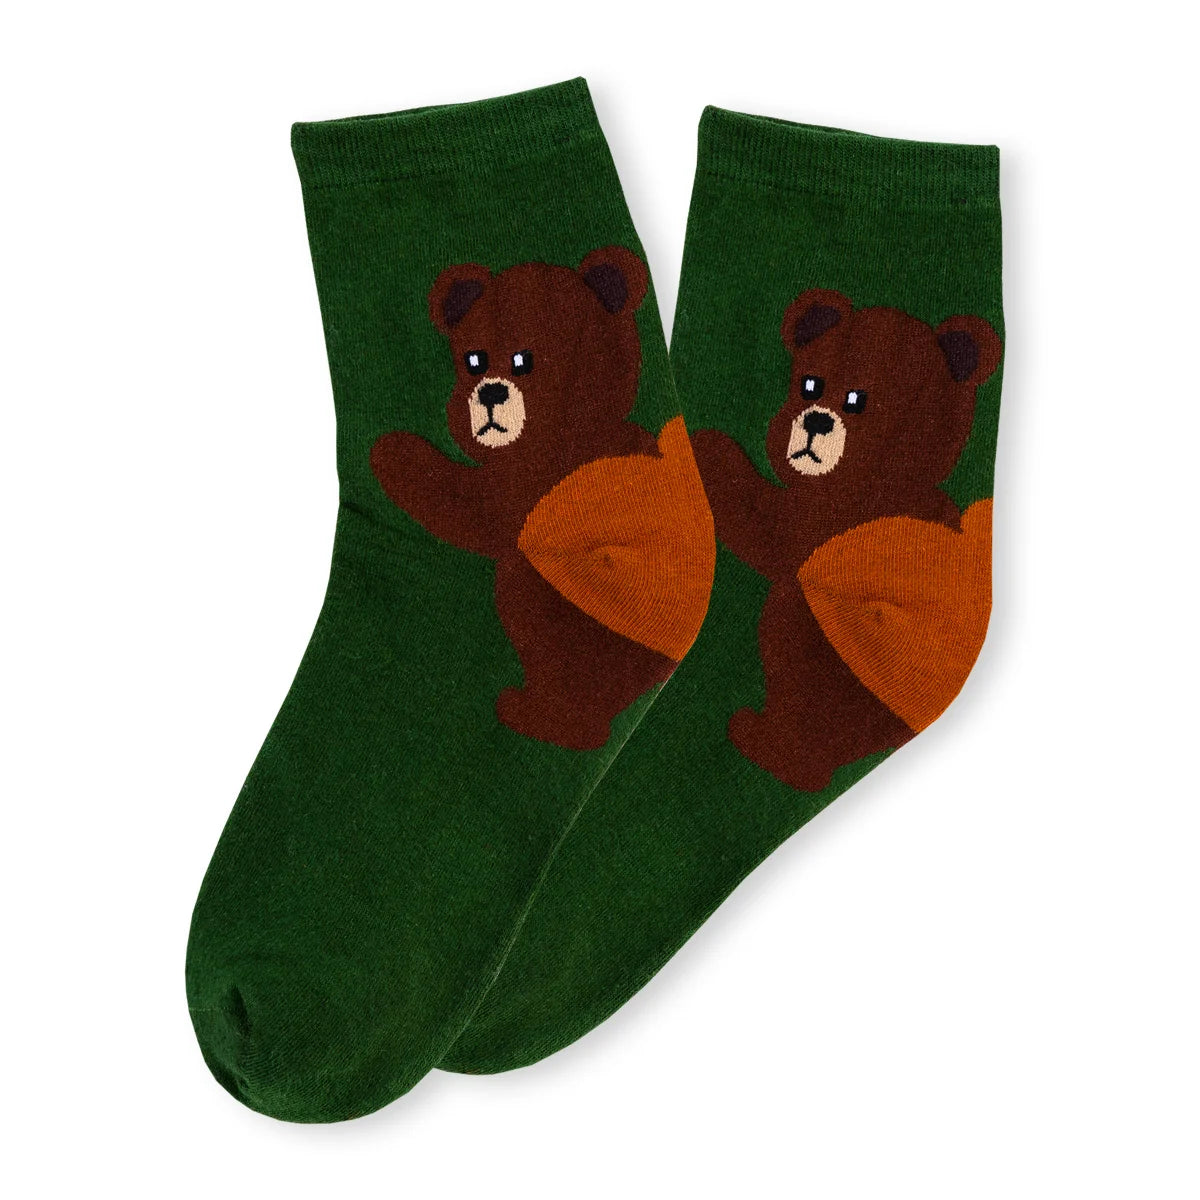 Chaussettes vert adultes en coton représentant un ours sur le talon de la chaussette | Chaussettes douces et respirantes | Un excellent choix pour les adultes qui aiment les animaux